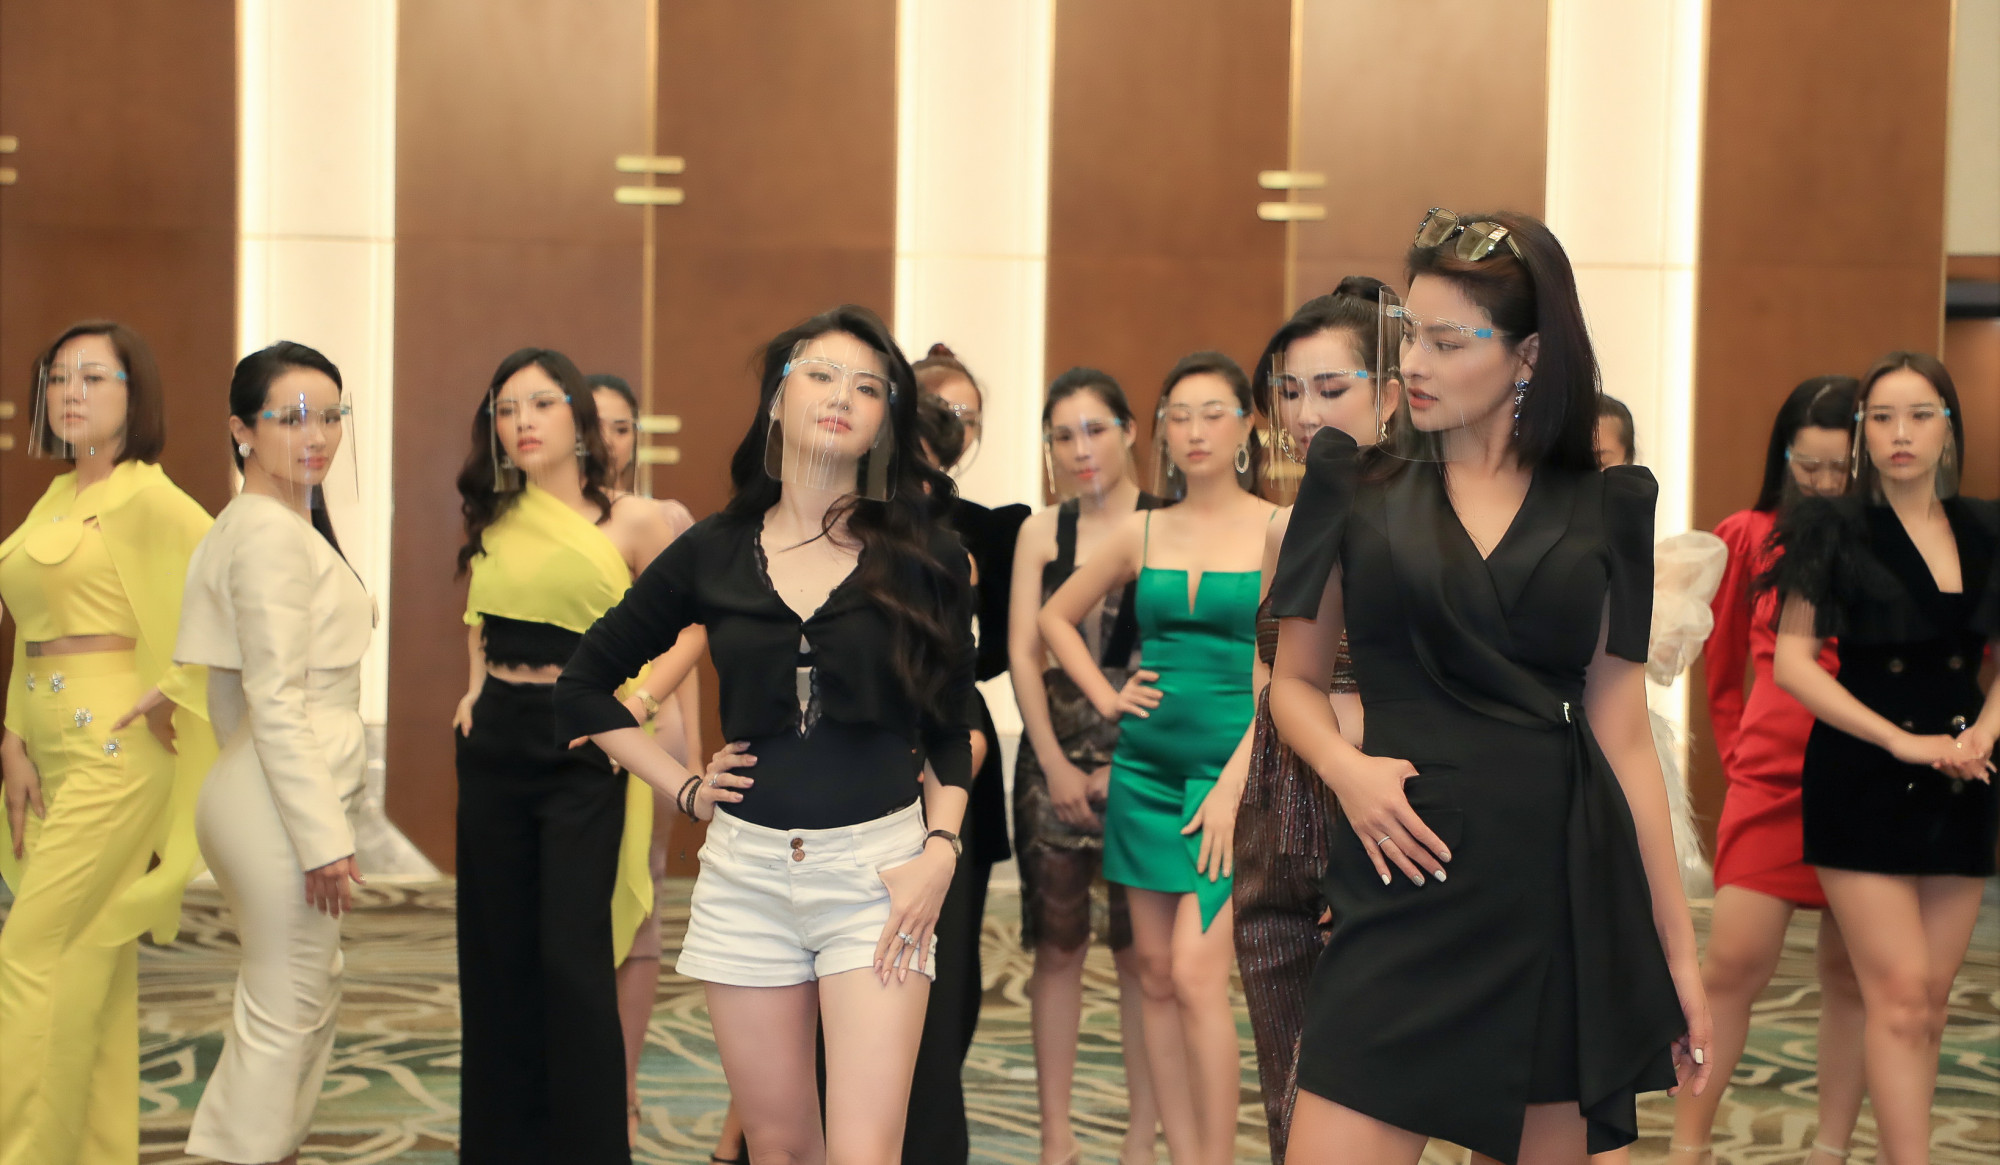 Mới đây nhất, cô tiếp tục hướng dẫn catwalk cho dàn thí sinh Hoa hậu Doanh nhân Việt Nam 2021. Xuất hiện tại buổi tập luyện, Vũ Thu Phương mặc chiếc đầm đen giản dị nhưng vẫn cực kì lôi cuốn nhờ vóc dáng quyến rũ và gương mặt xinh đẹp.